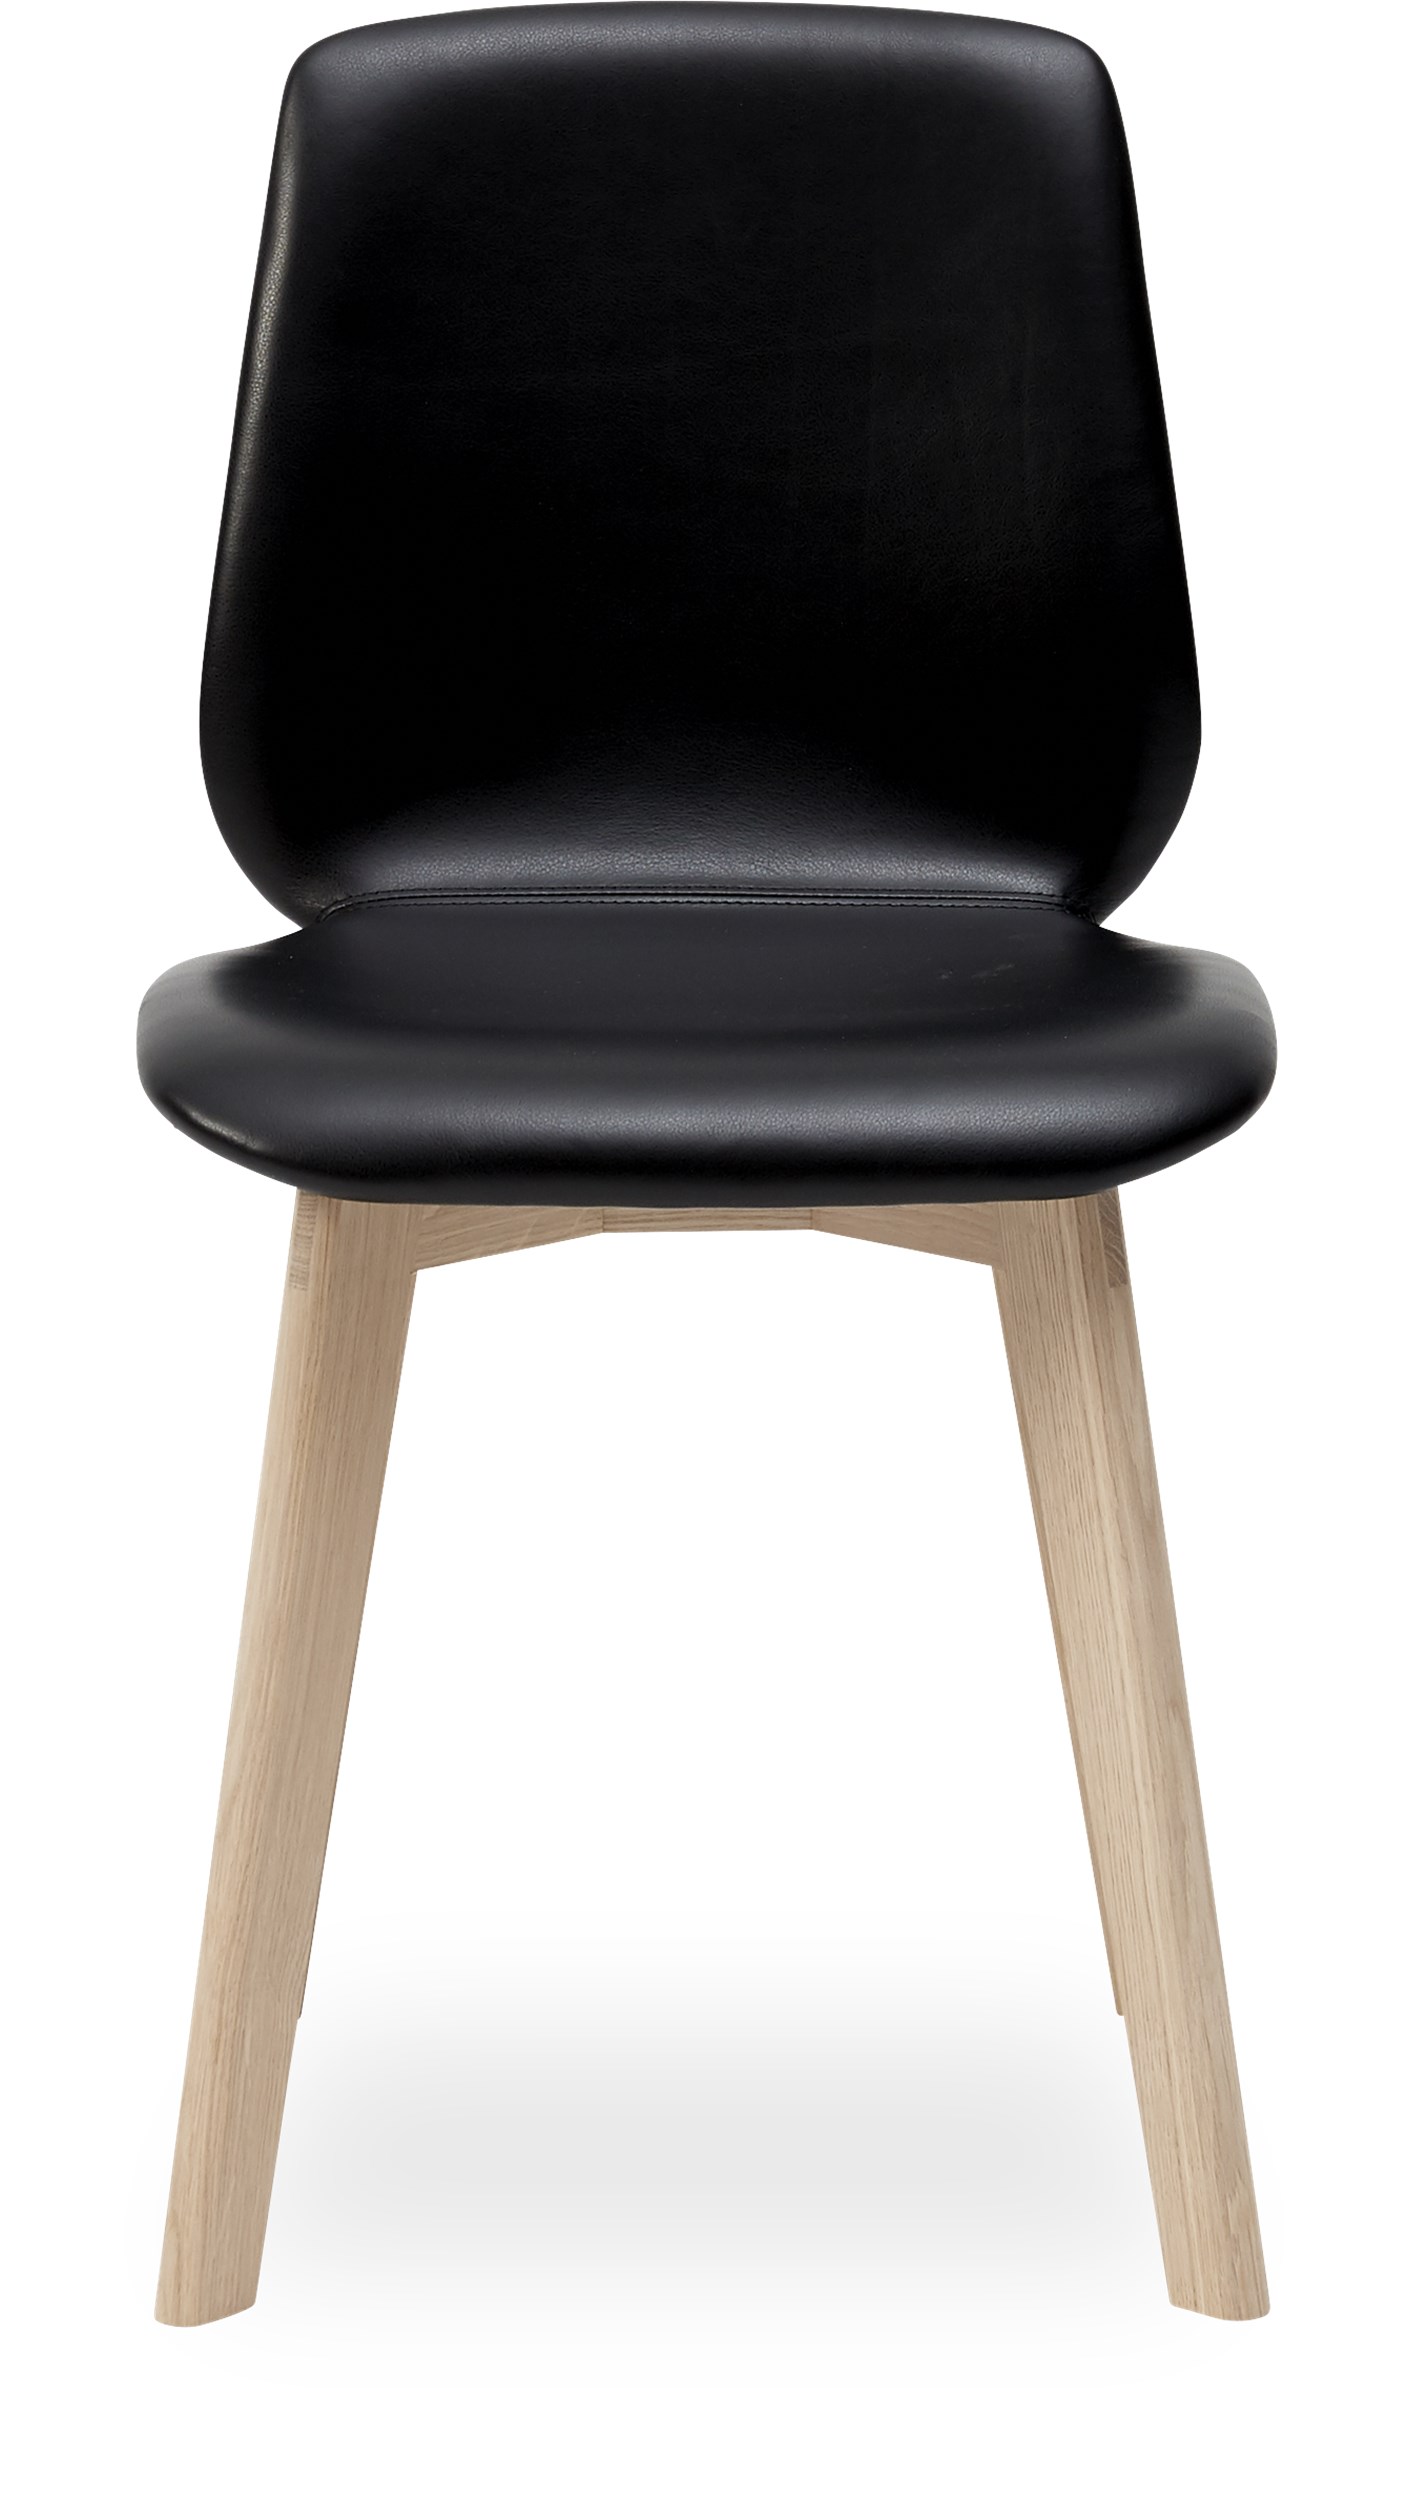 Share matstol - Sits 0100 svart läder och edgeben i vitpigmenterad mattlackad ek